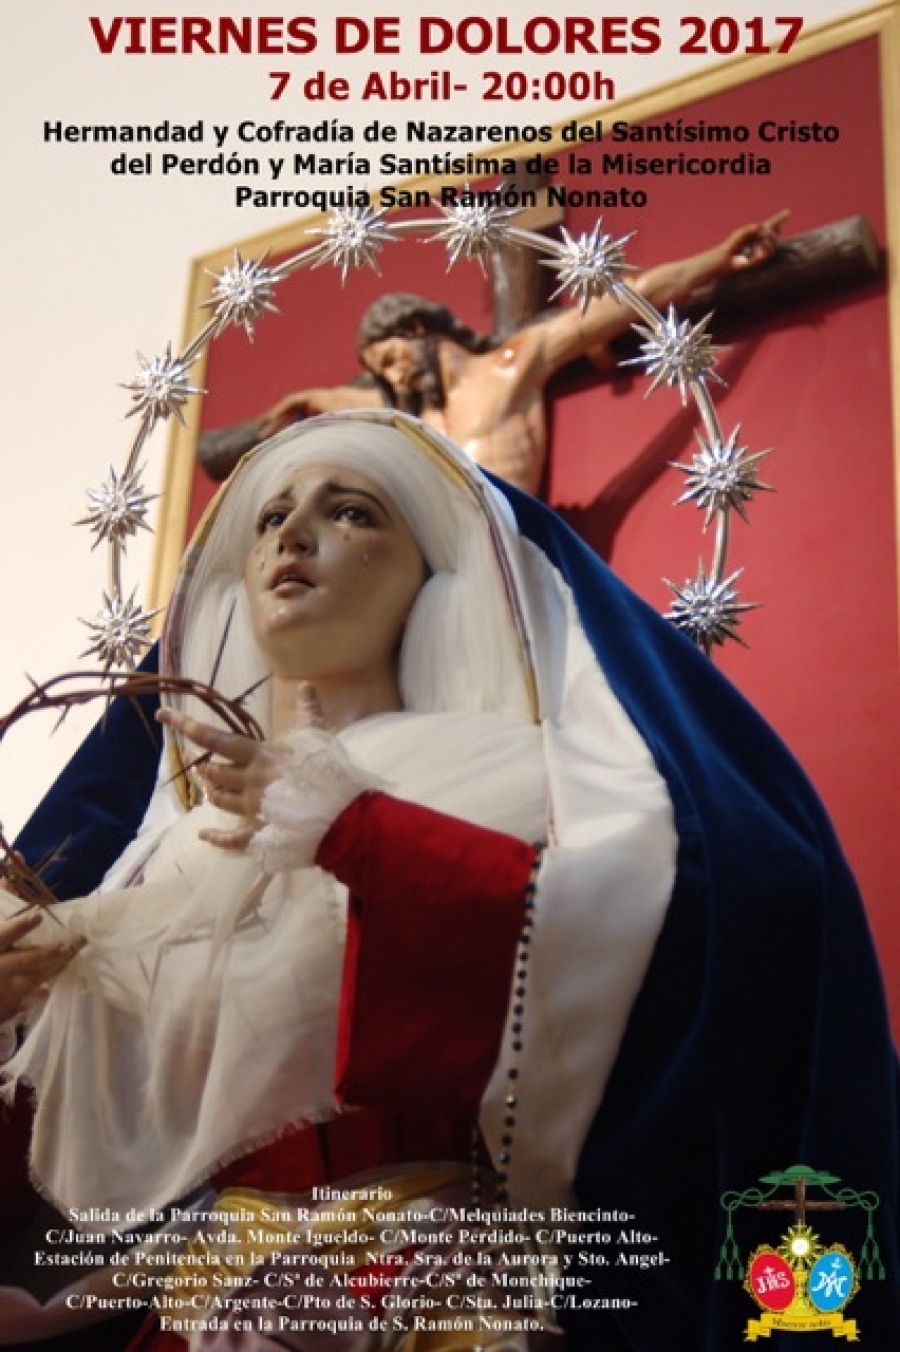 La parroquia de San Ramón Nonato organiza una procesión con el Cristo del Perdón